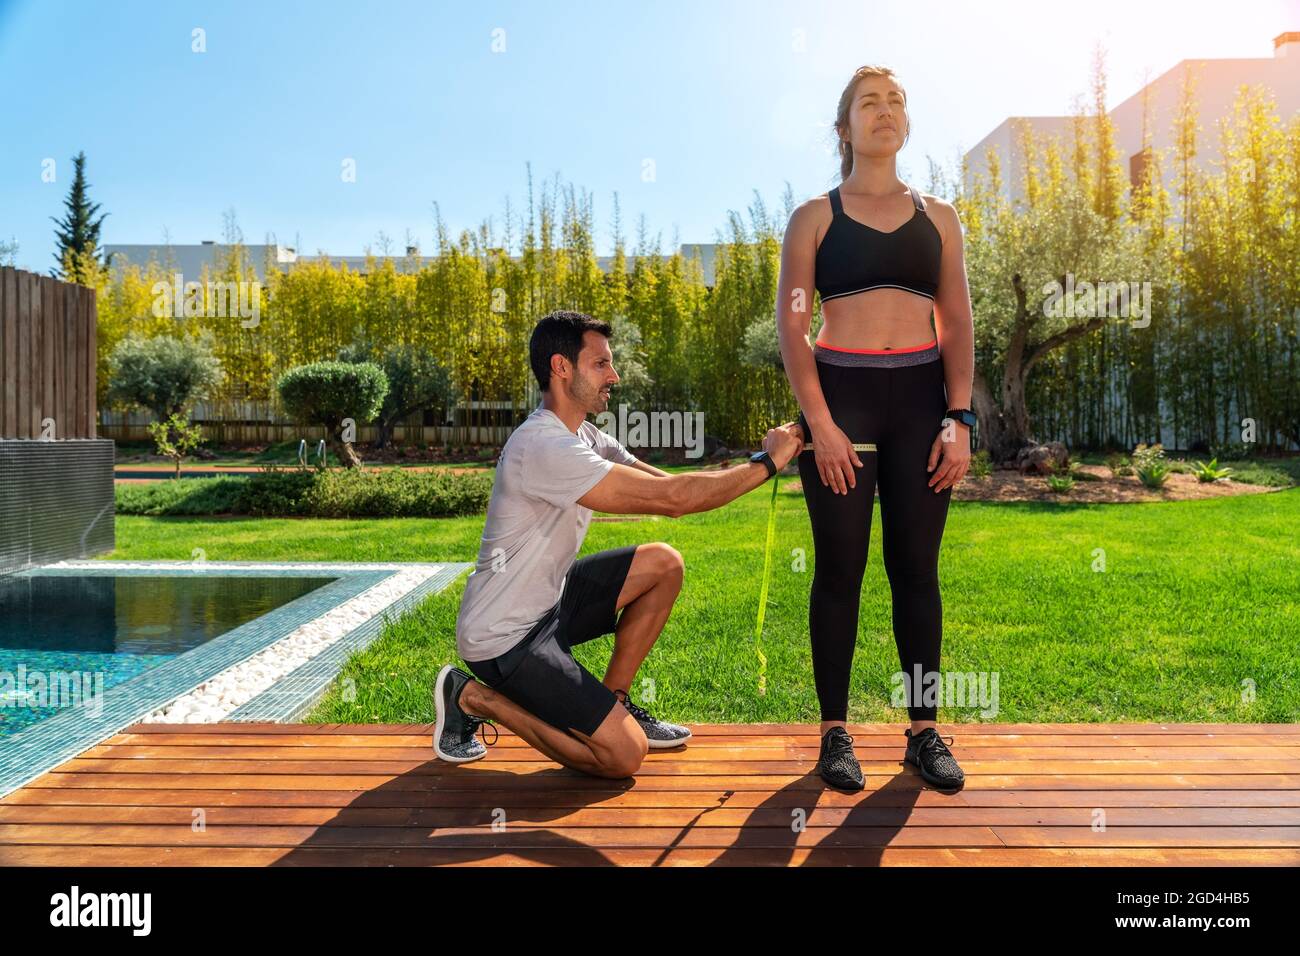 Un uomo europeo, personal trainer, misura la gamba del cliente, l'anca per il progresso nella formazione, per la perdita di peso. In estate, in giardino con piscina. Foto Stock